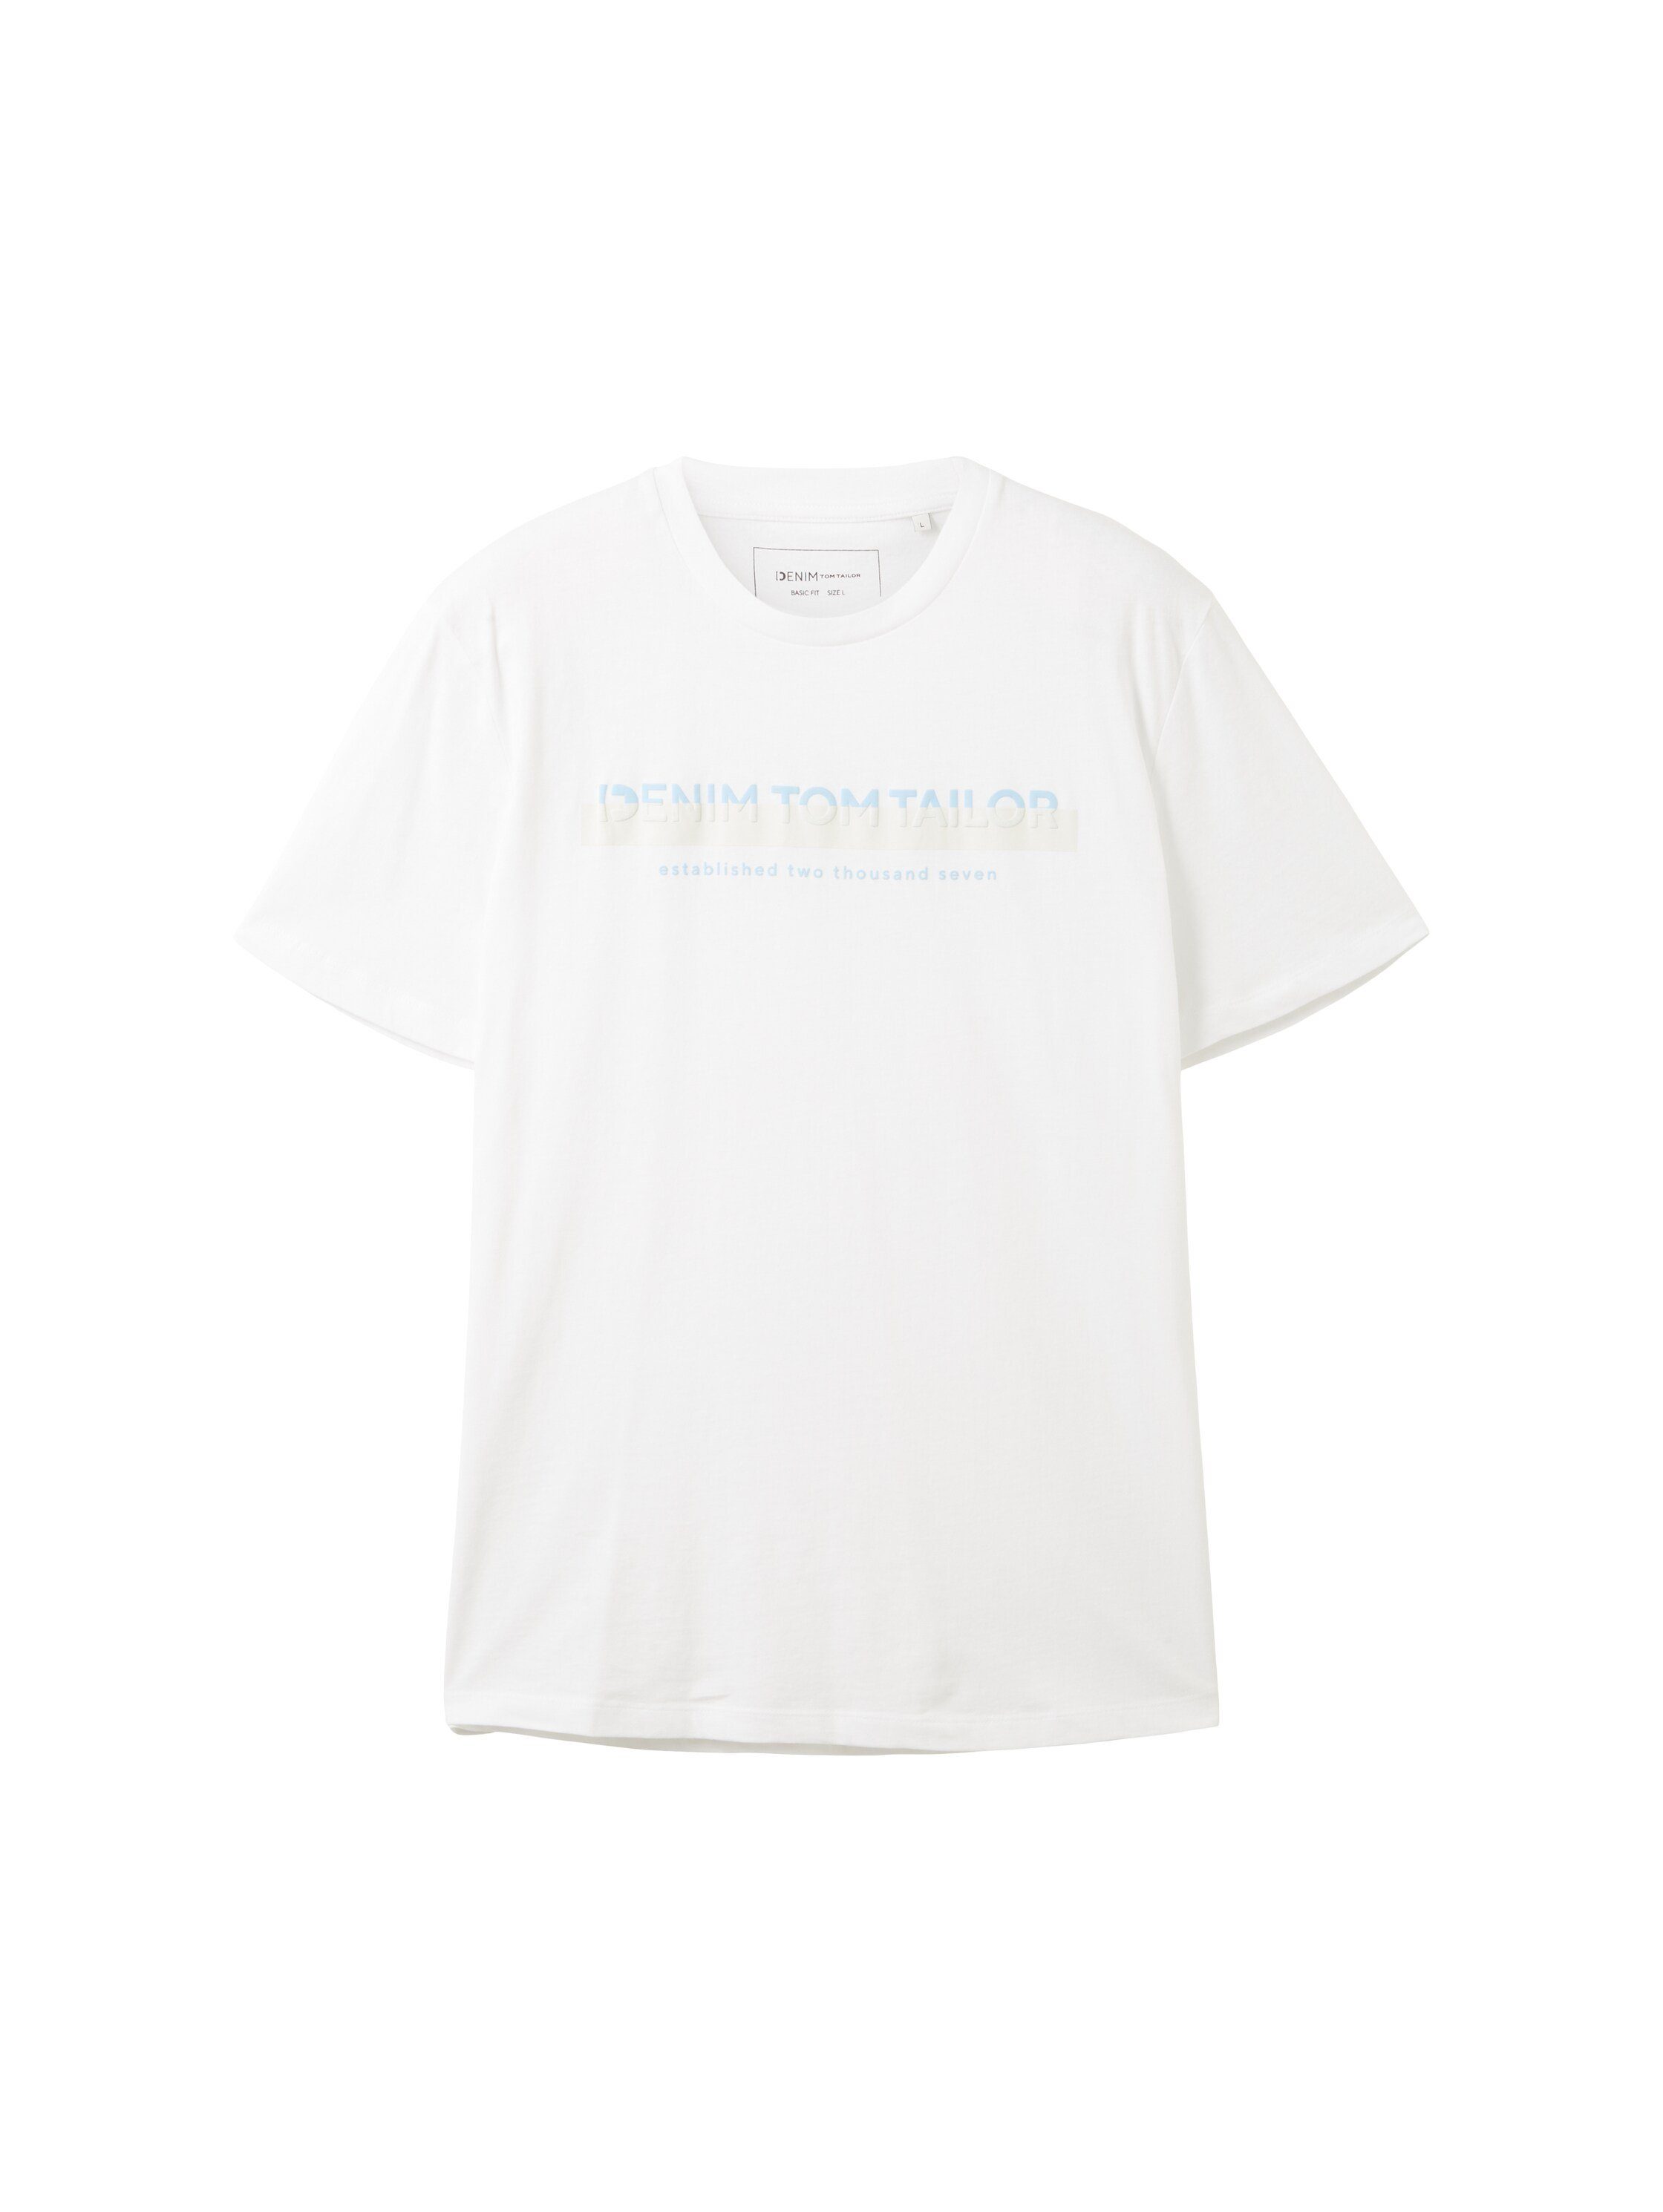 Logofrontprint mit Denim TOM white T-Shirt TAILOR